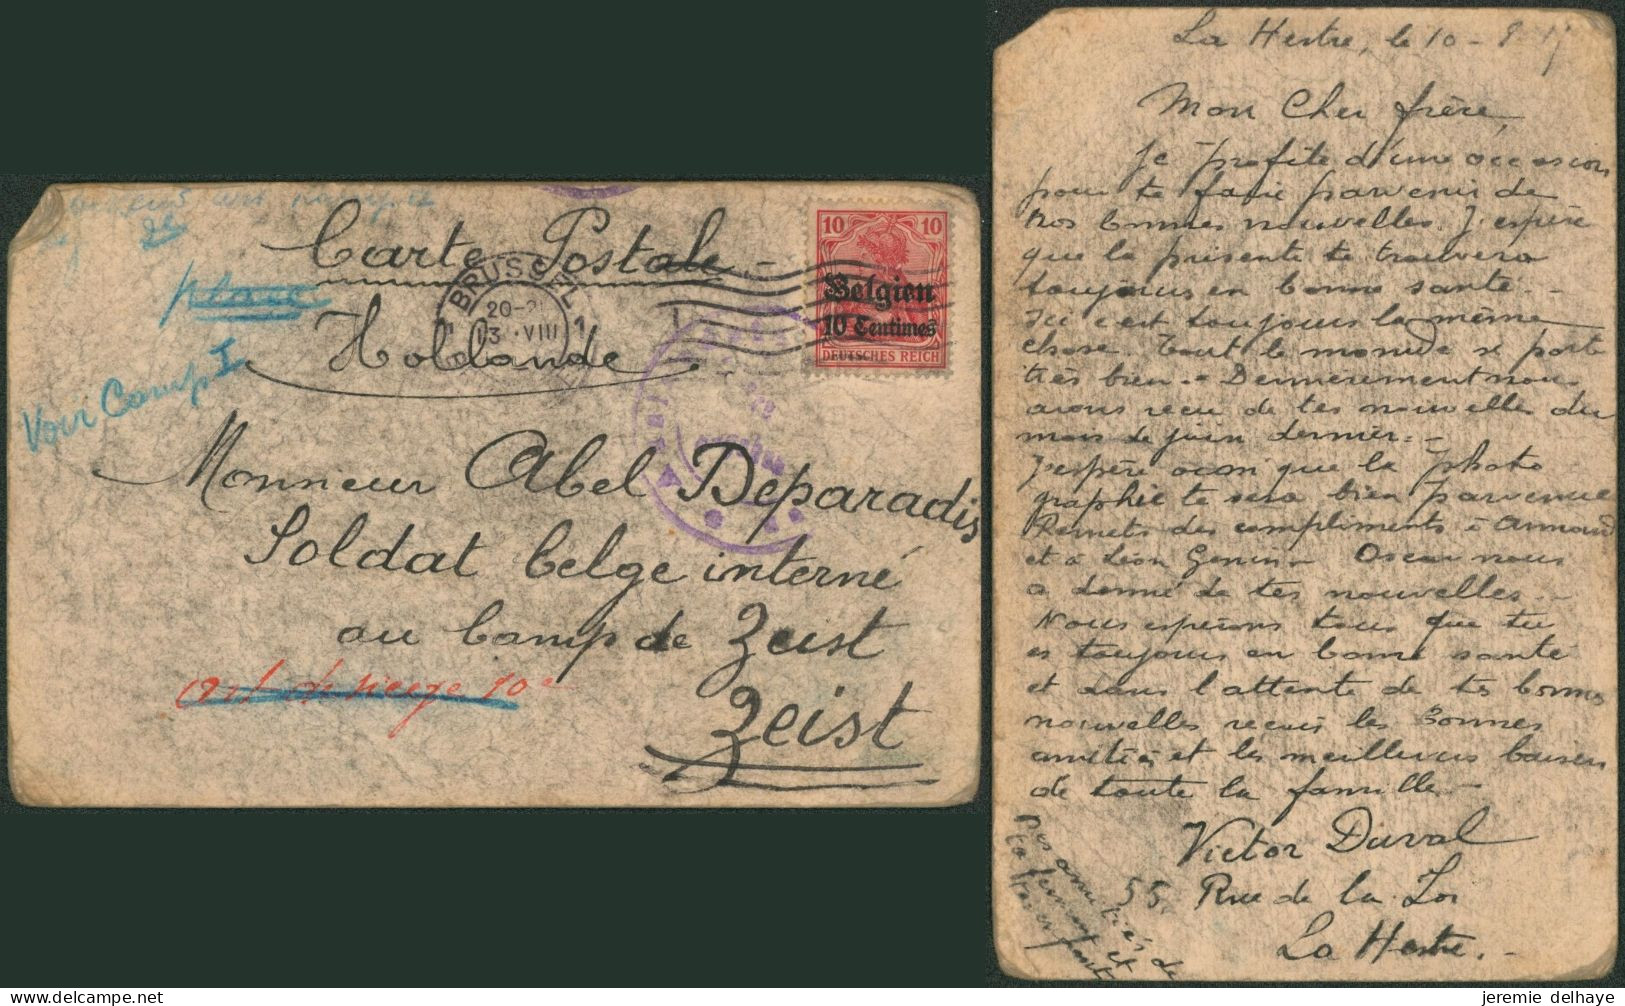 Guerre 14-18 - OC3 Sur Carte Postale à La Main Expédié De Bruxelles (1915) > Soldat Belge Interné Au Camp De Zeist - OC1/25 Gouvernement Général